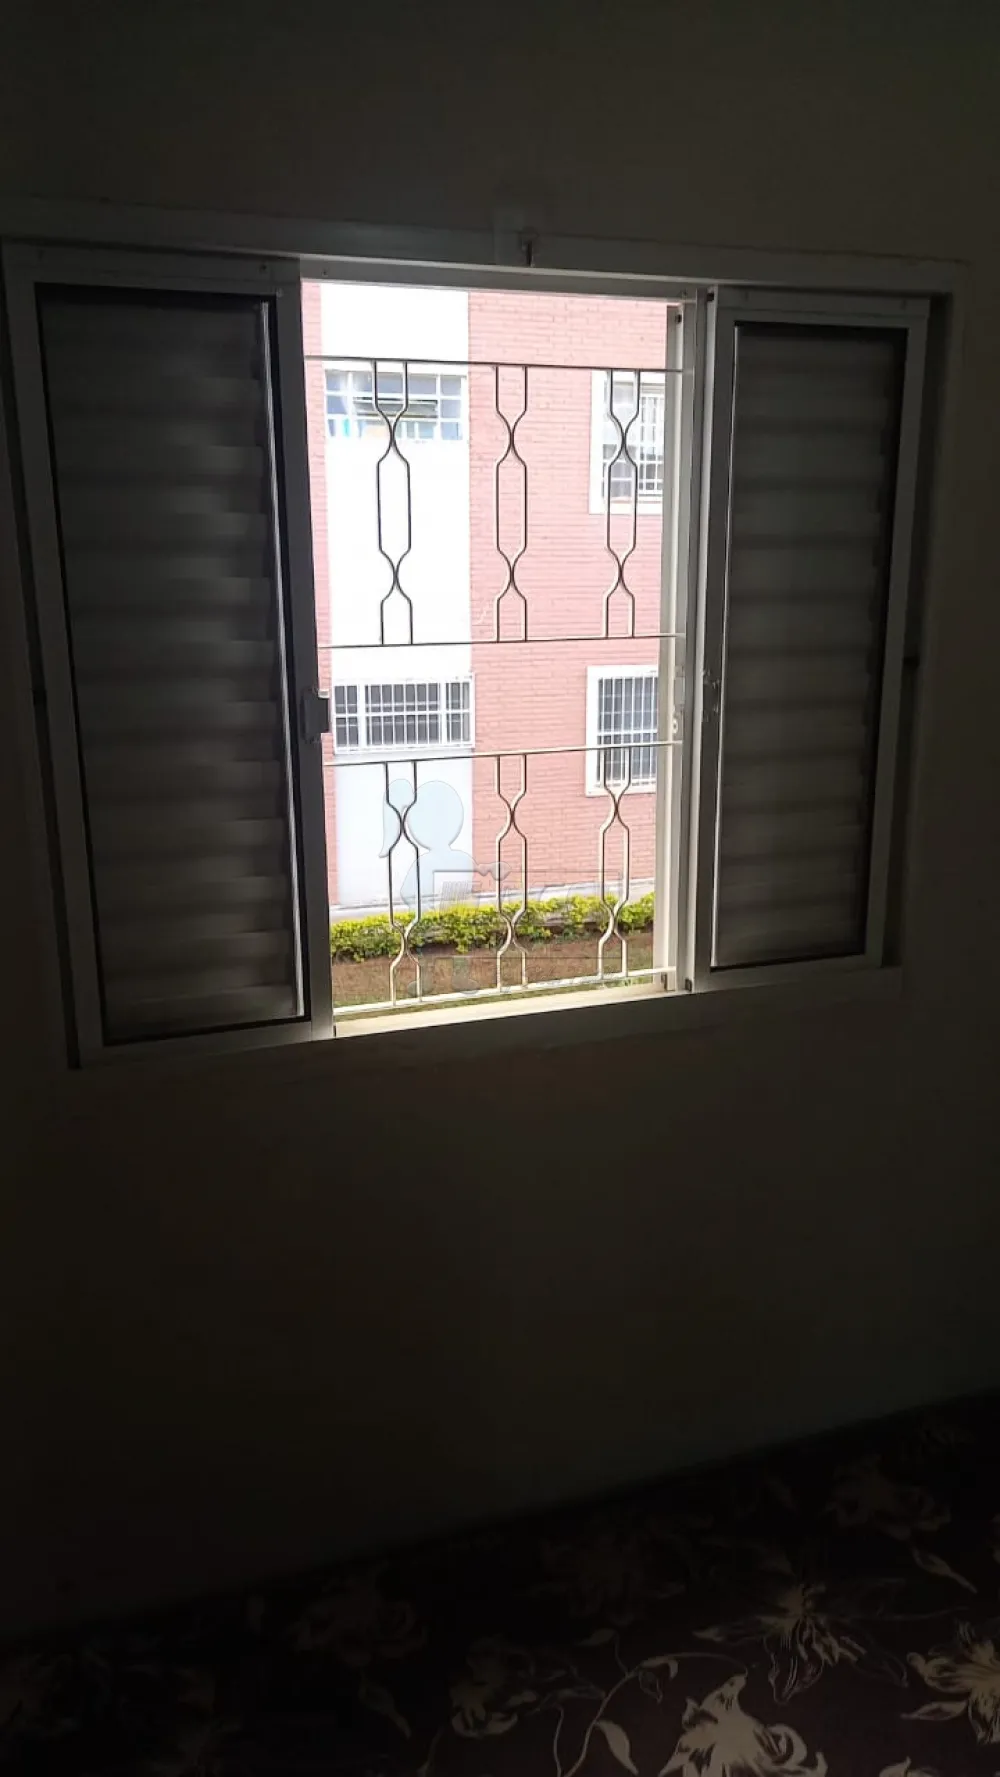 Comprar Apartamentos / Padrão em Ribeirão Preto R$ 200.000,00 - Foto 16